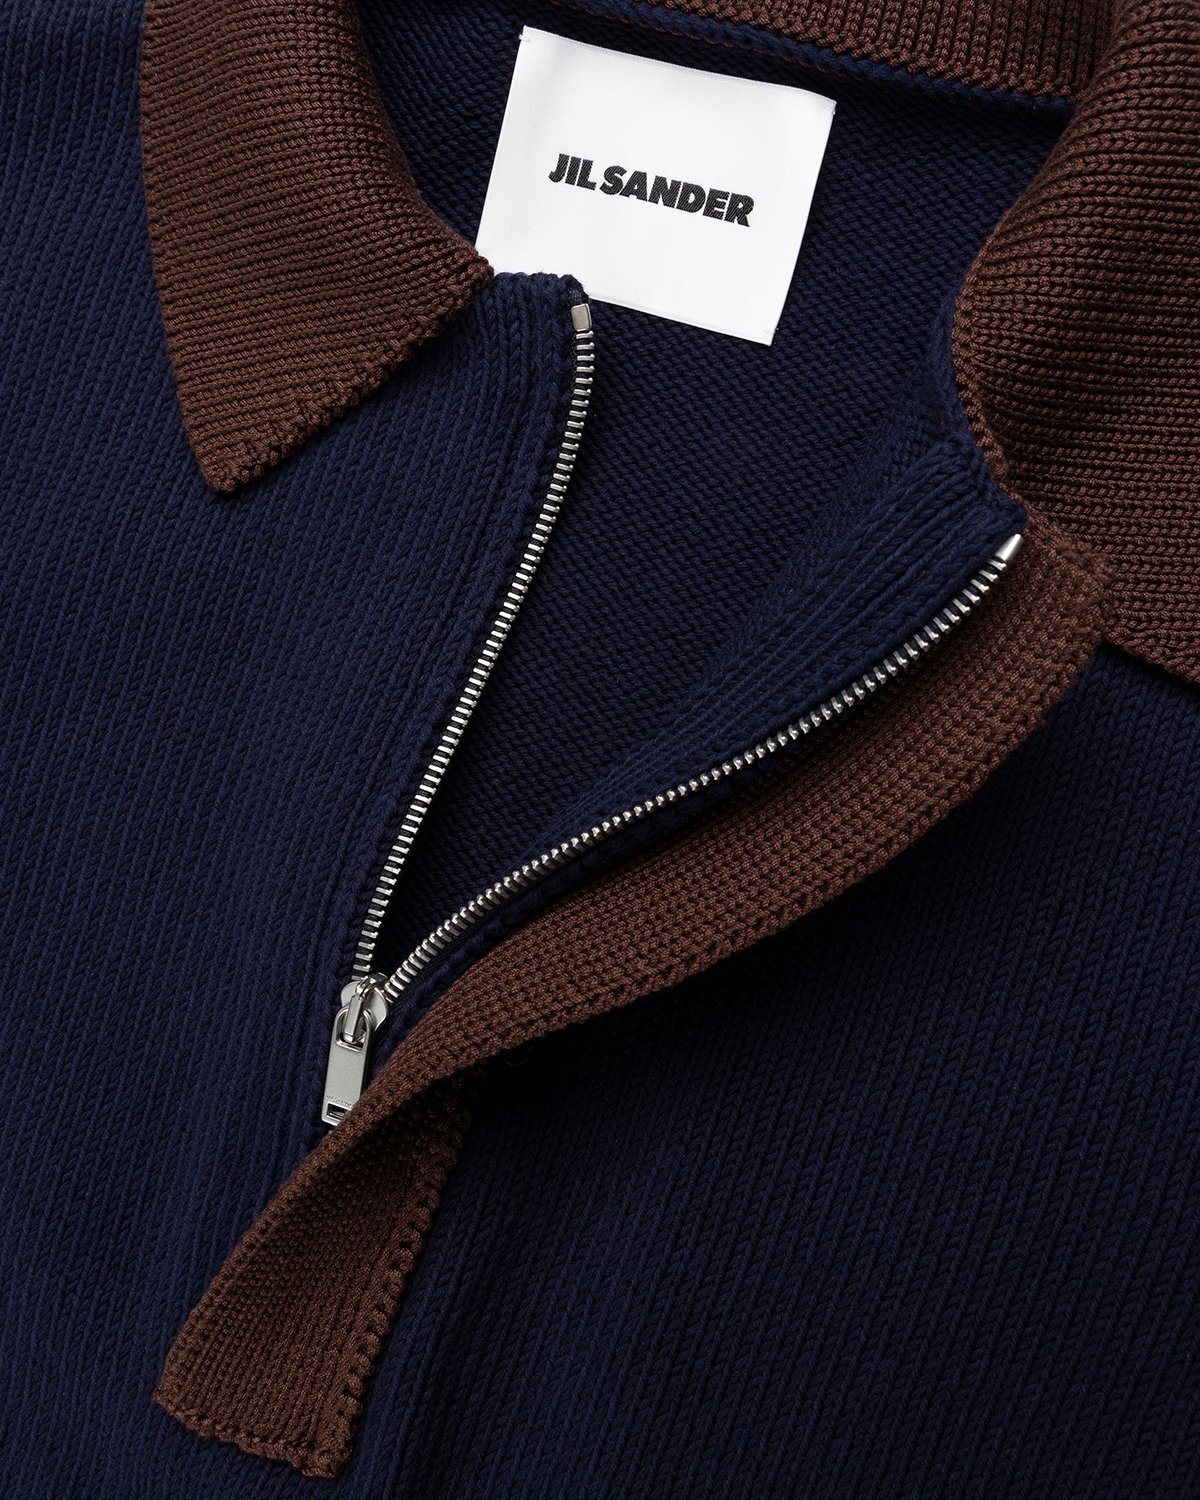 Jil Sander – Short Sleeve Knit Shirt Dark Blue - Shirts - Blue - Image 5